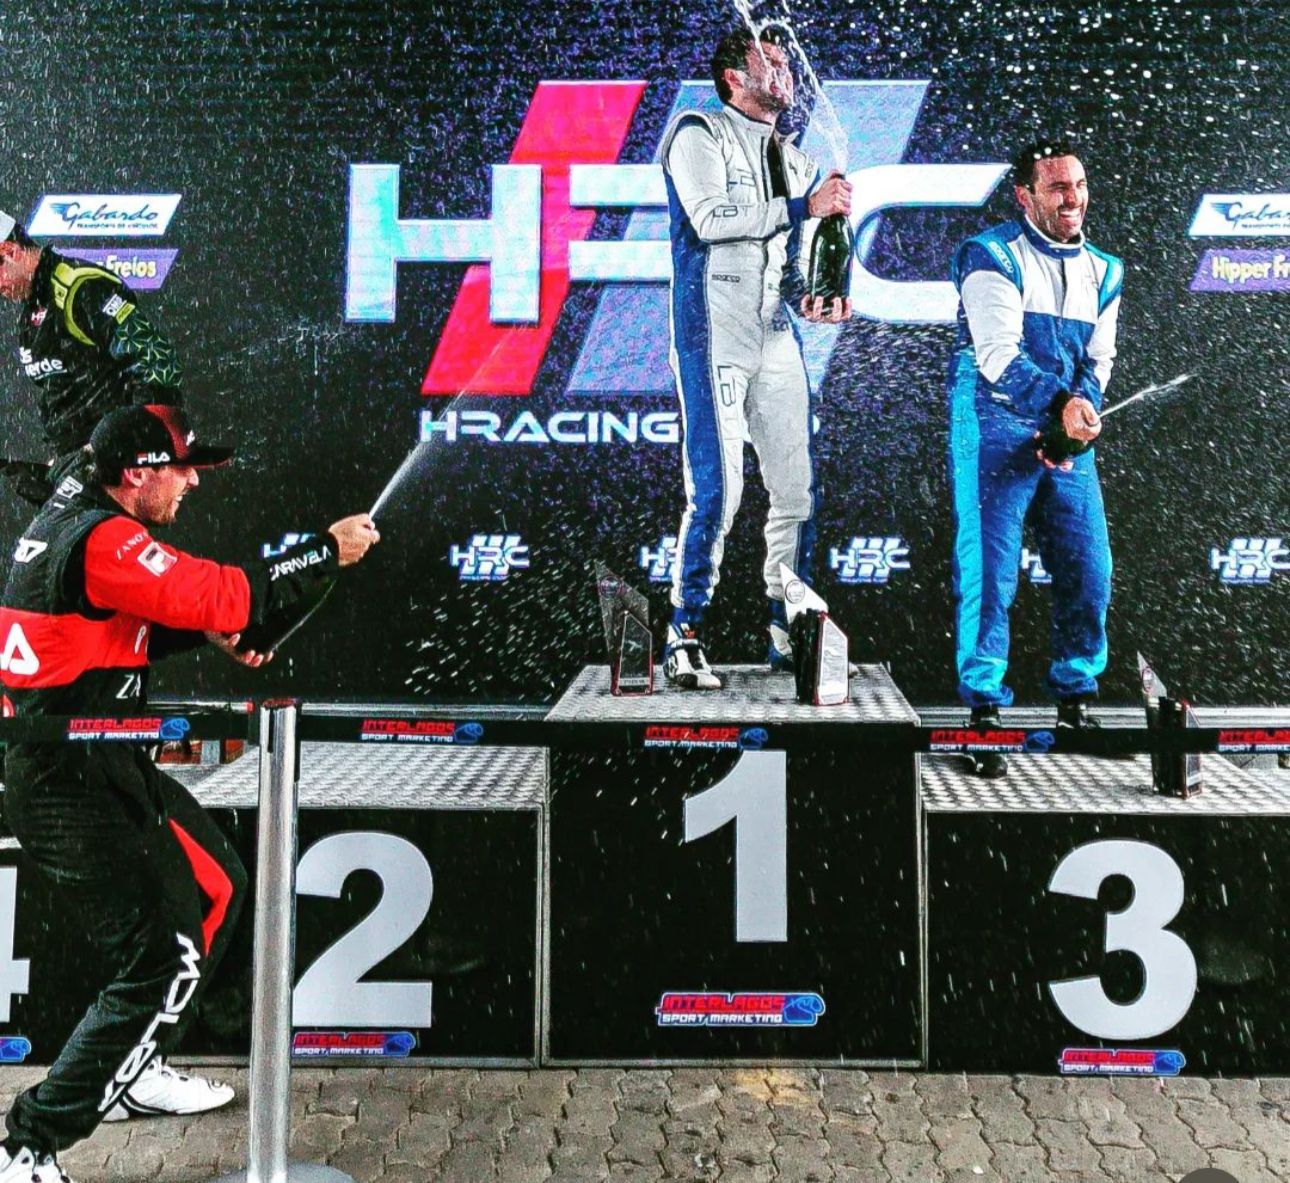 Thiago Arns, piloto tubaronense estreia com dois podium na HRACING CUP, em Interlagos (SP)